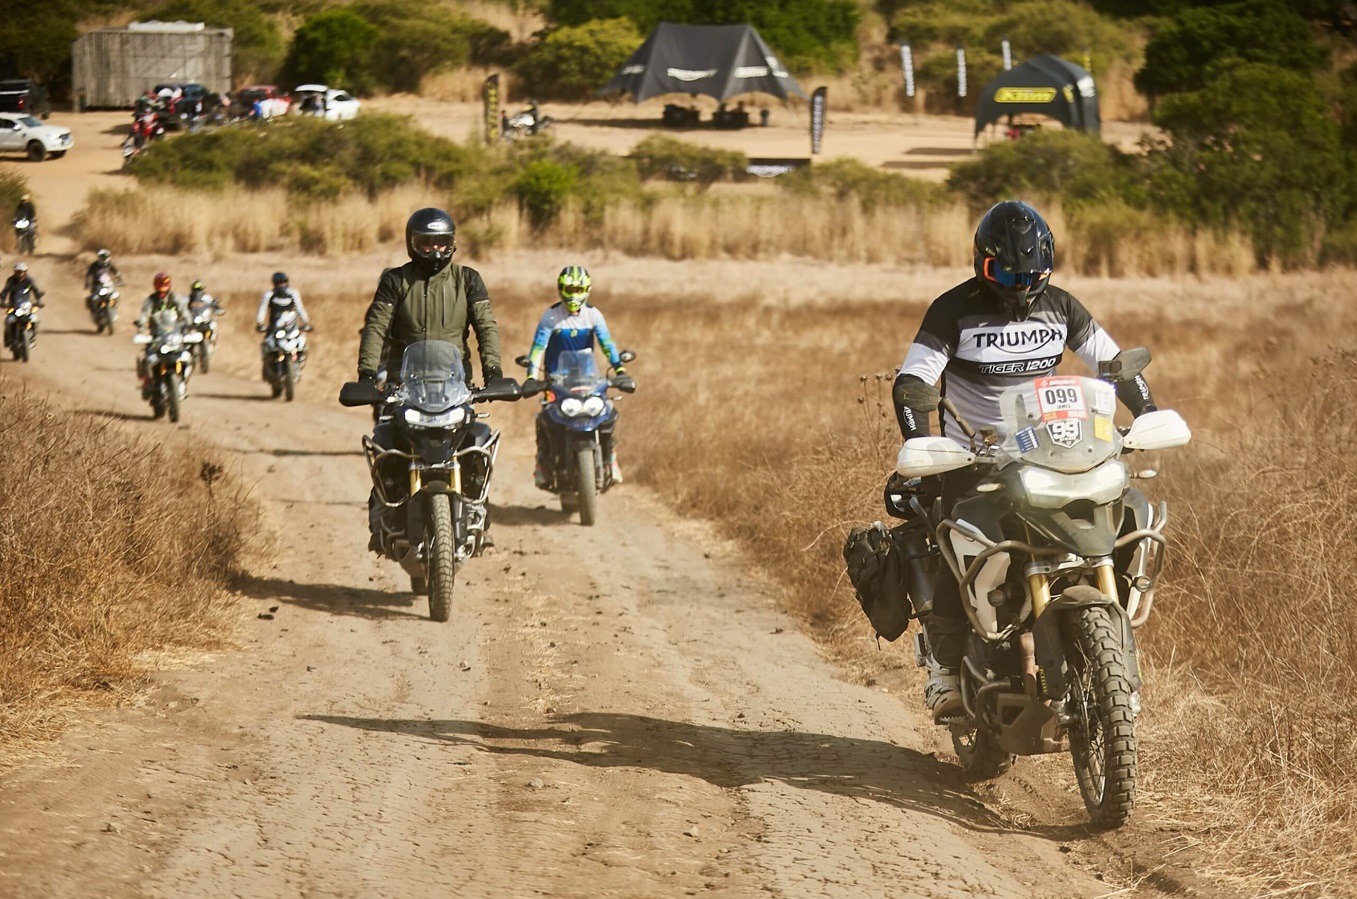 Triumph Motorcycles, Triumph Motorcycles y Parque Las Palmas inauguran primera pista en Chile exclusiva para motos bigtrail, Portal Metropolitano